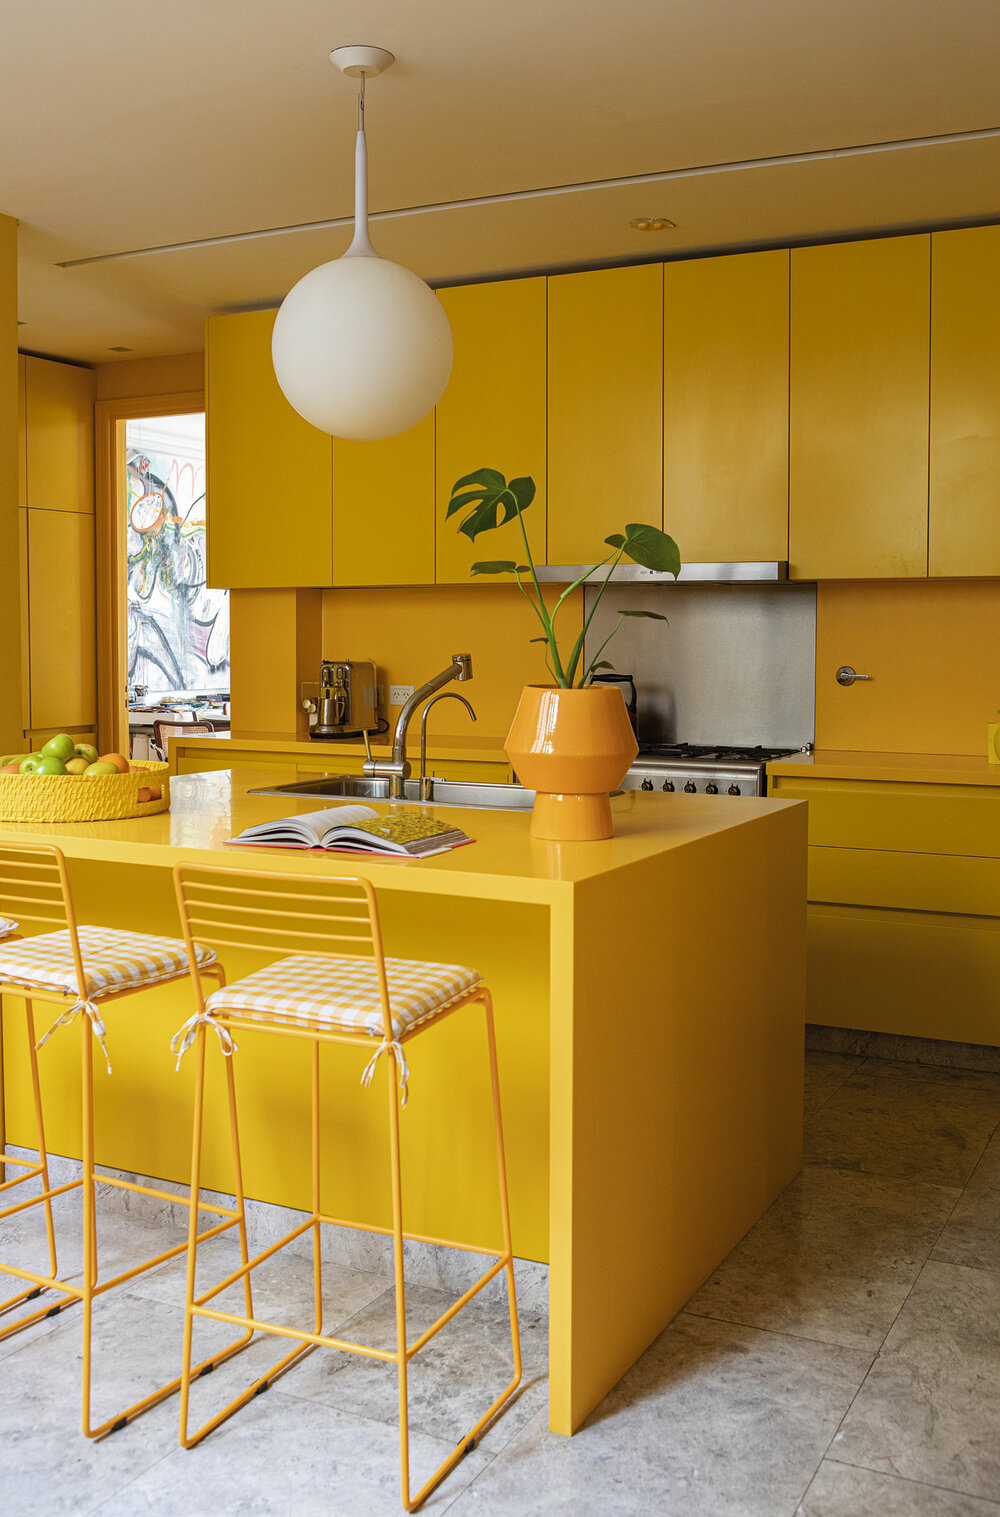 La cocina está dominada por el amarillo, presente en la mesada de Corian, sillas, aparadores y detalles que responden a la dinámica de la vida actual.